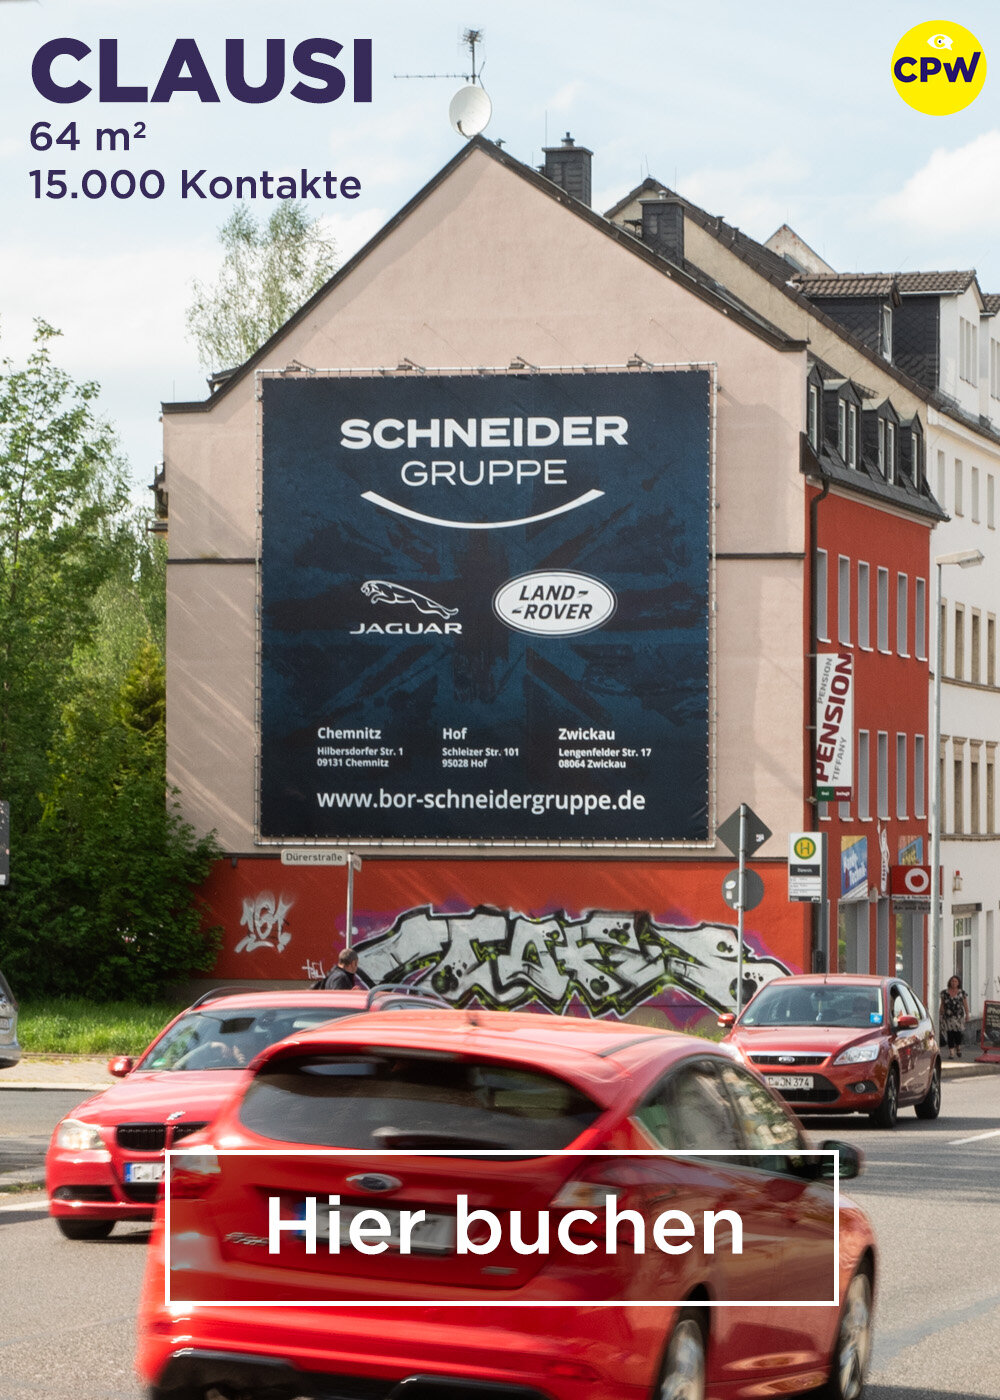 CPW Plakatwerbung Chemnitz - Werbestandort CLAUSI